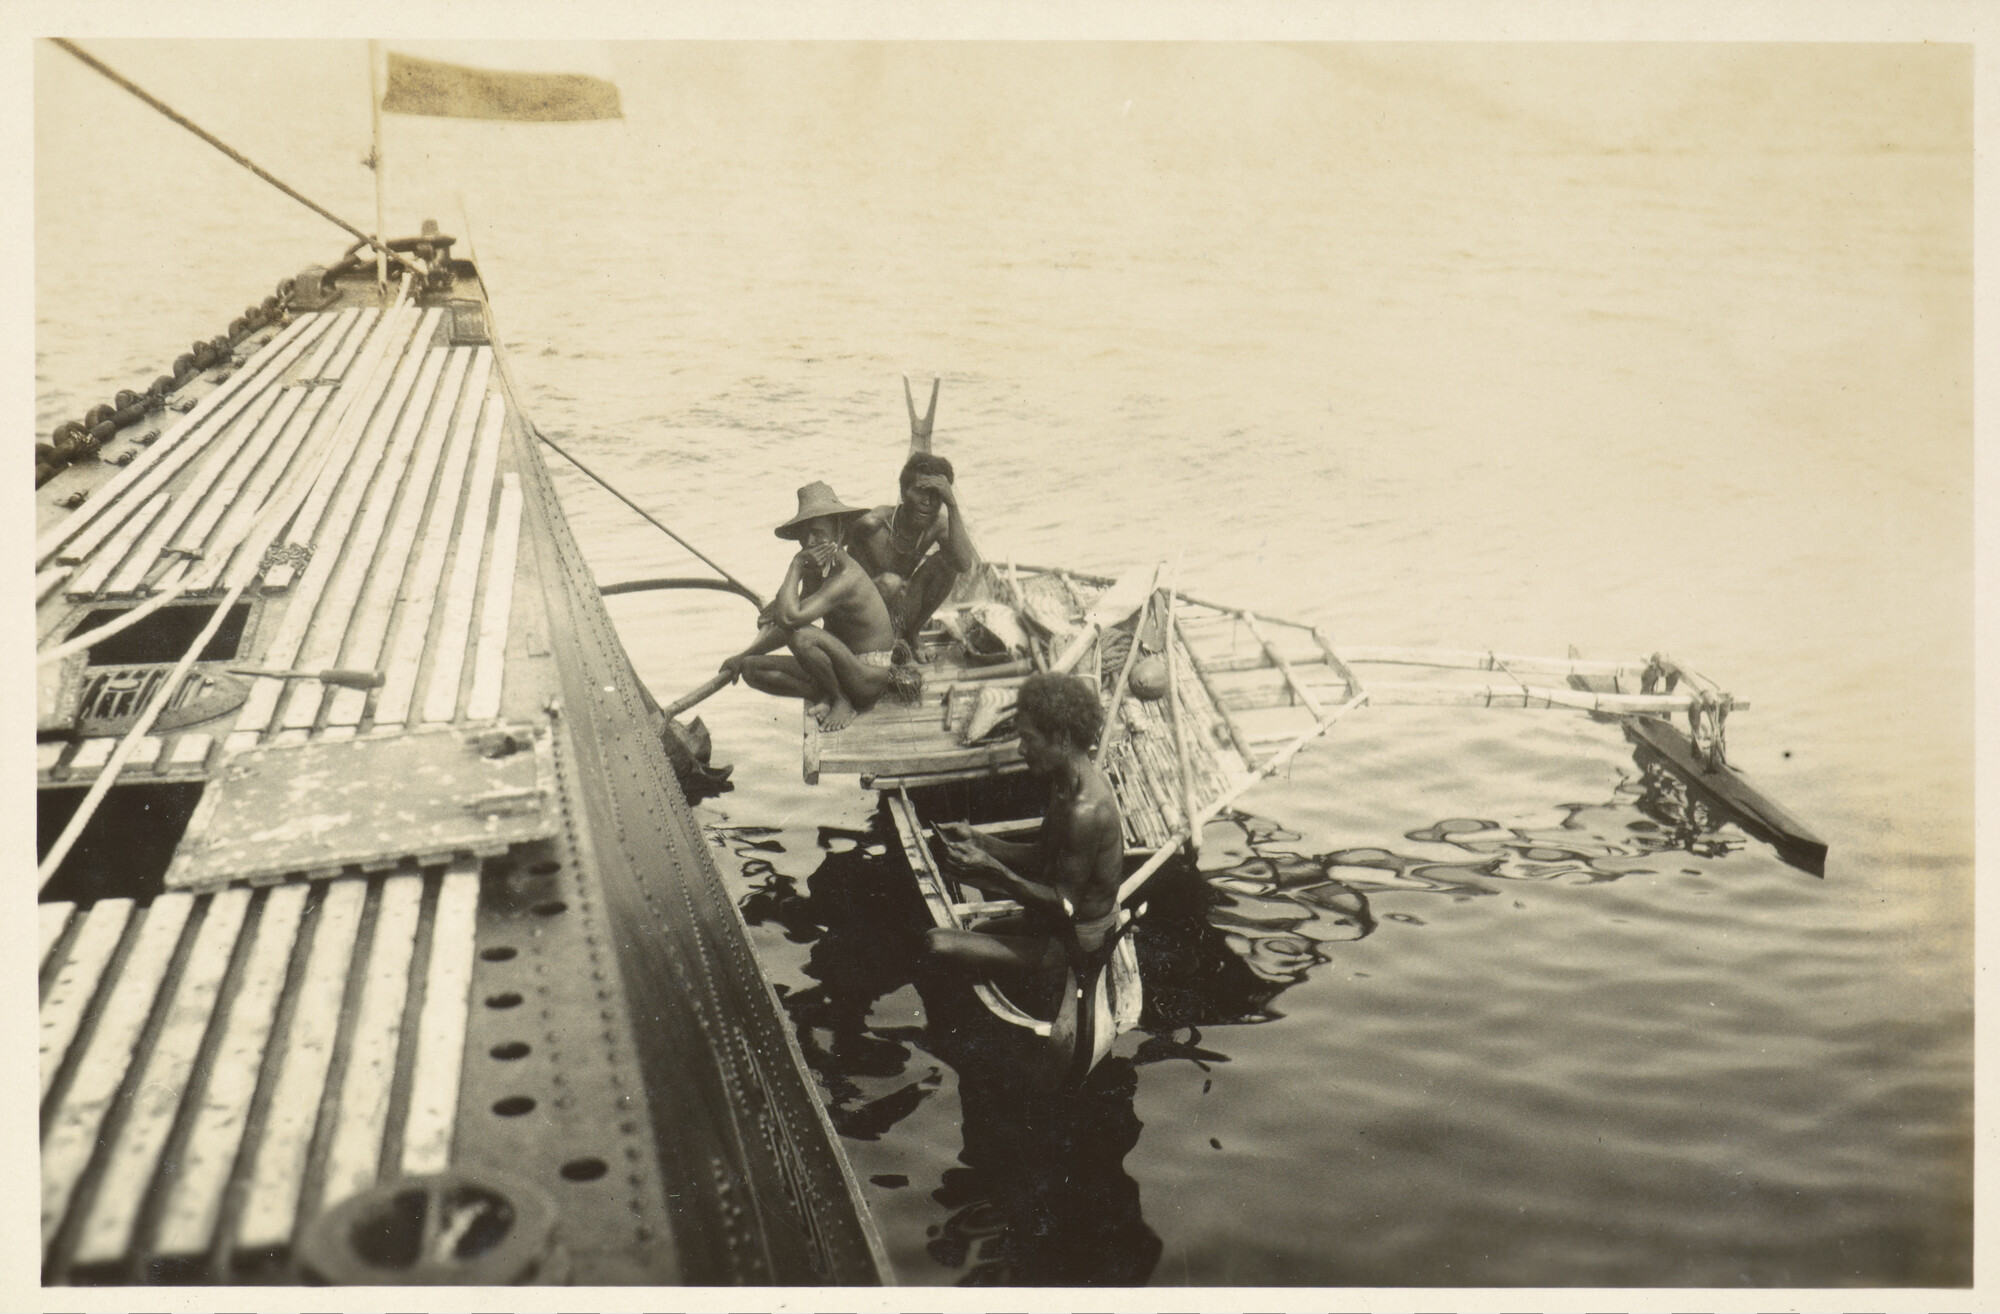 S.4660; Album van M.S. Wytema met foto's van de wereldreis van de onderzeeboot Hr.Ms. K XIII; fotoalbum